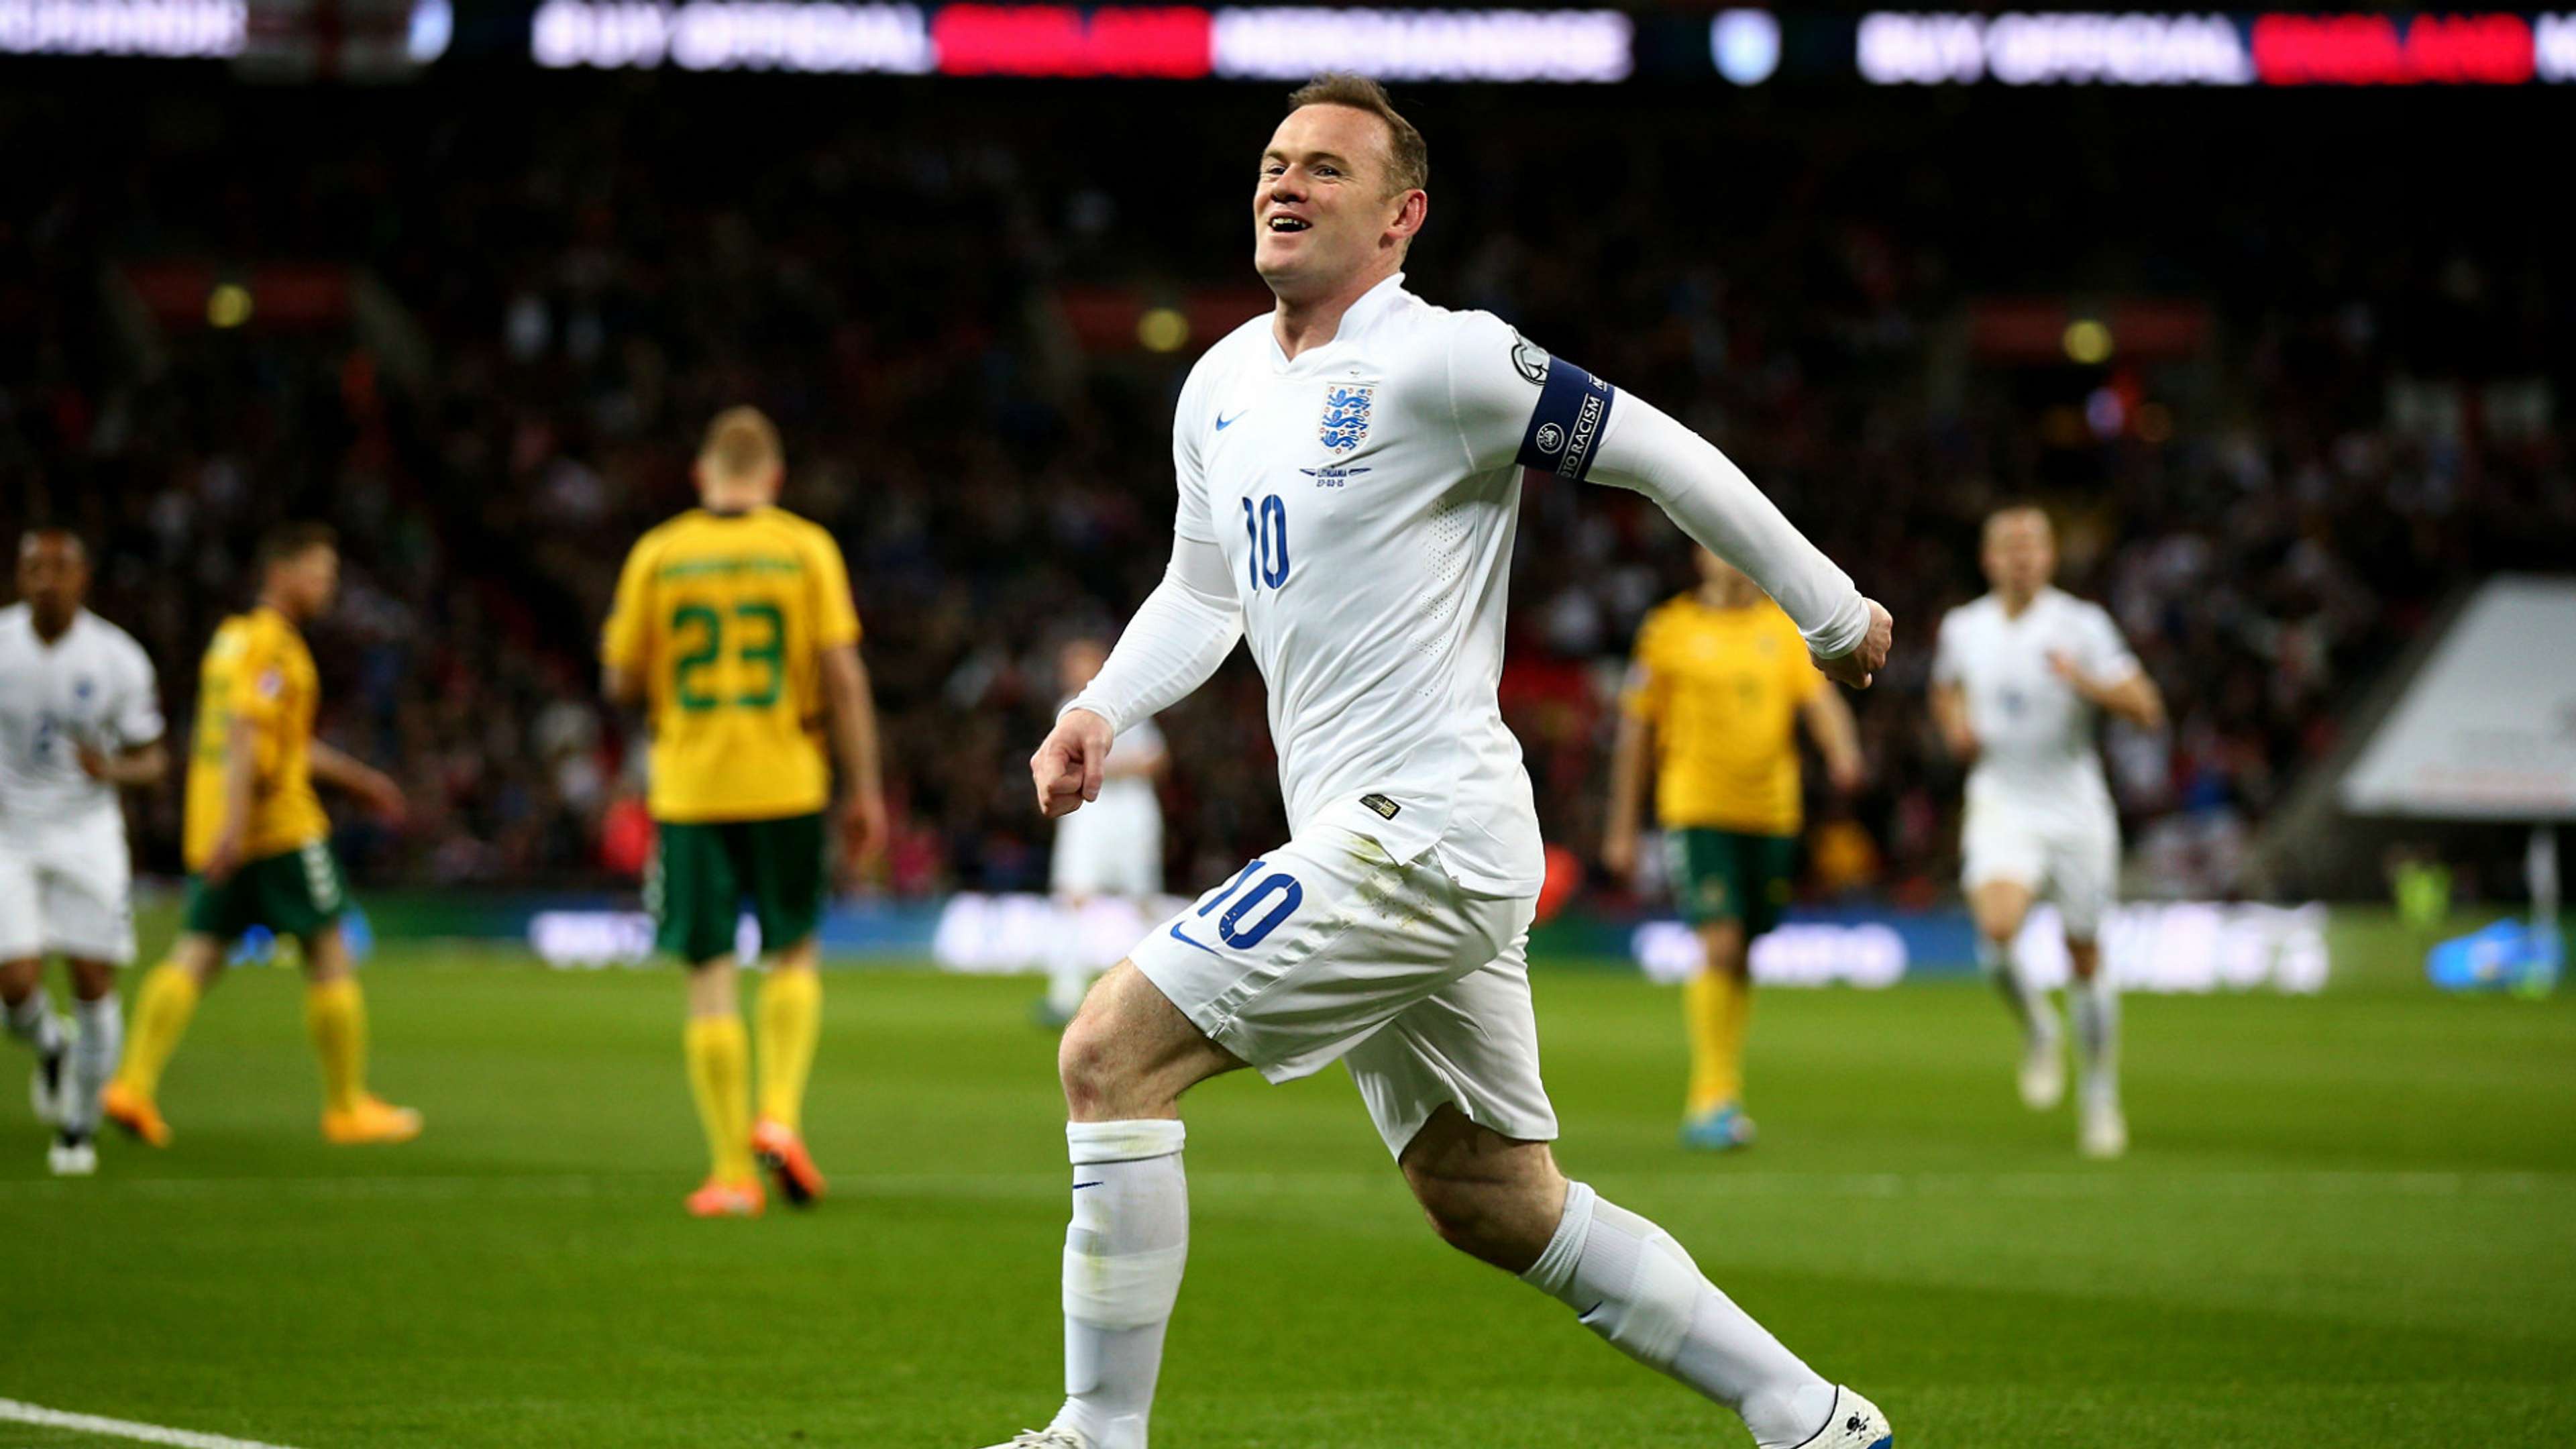 Wayne Rooney England v Lithuania - EURO 2016 Qualifier 03272015